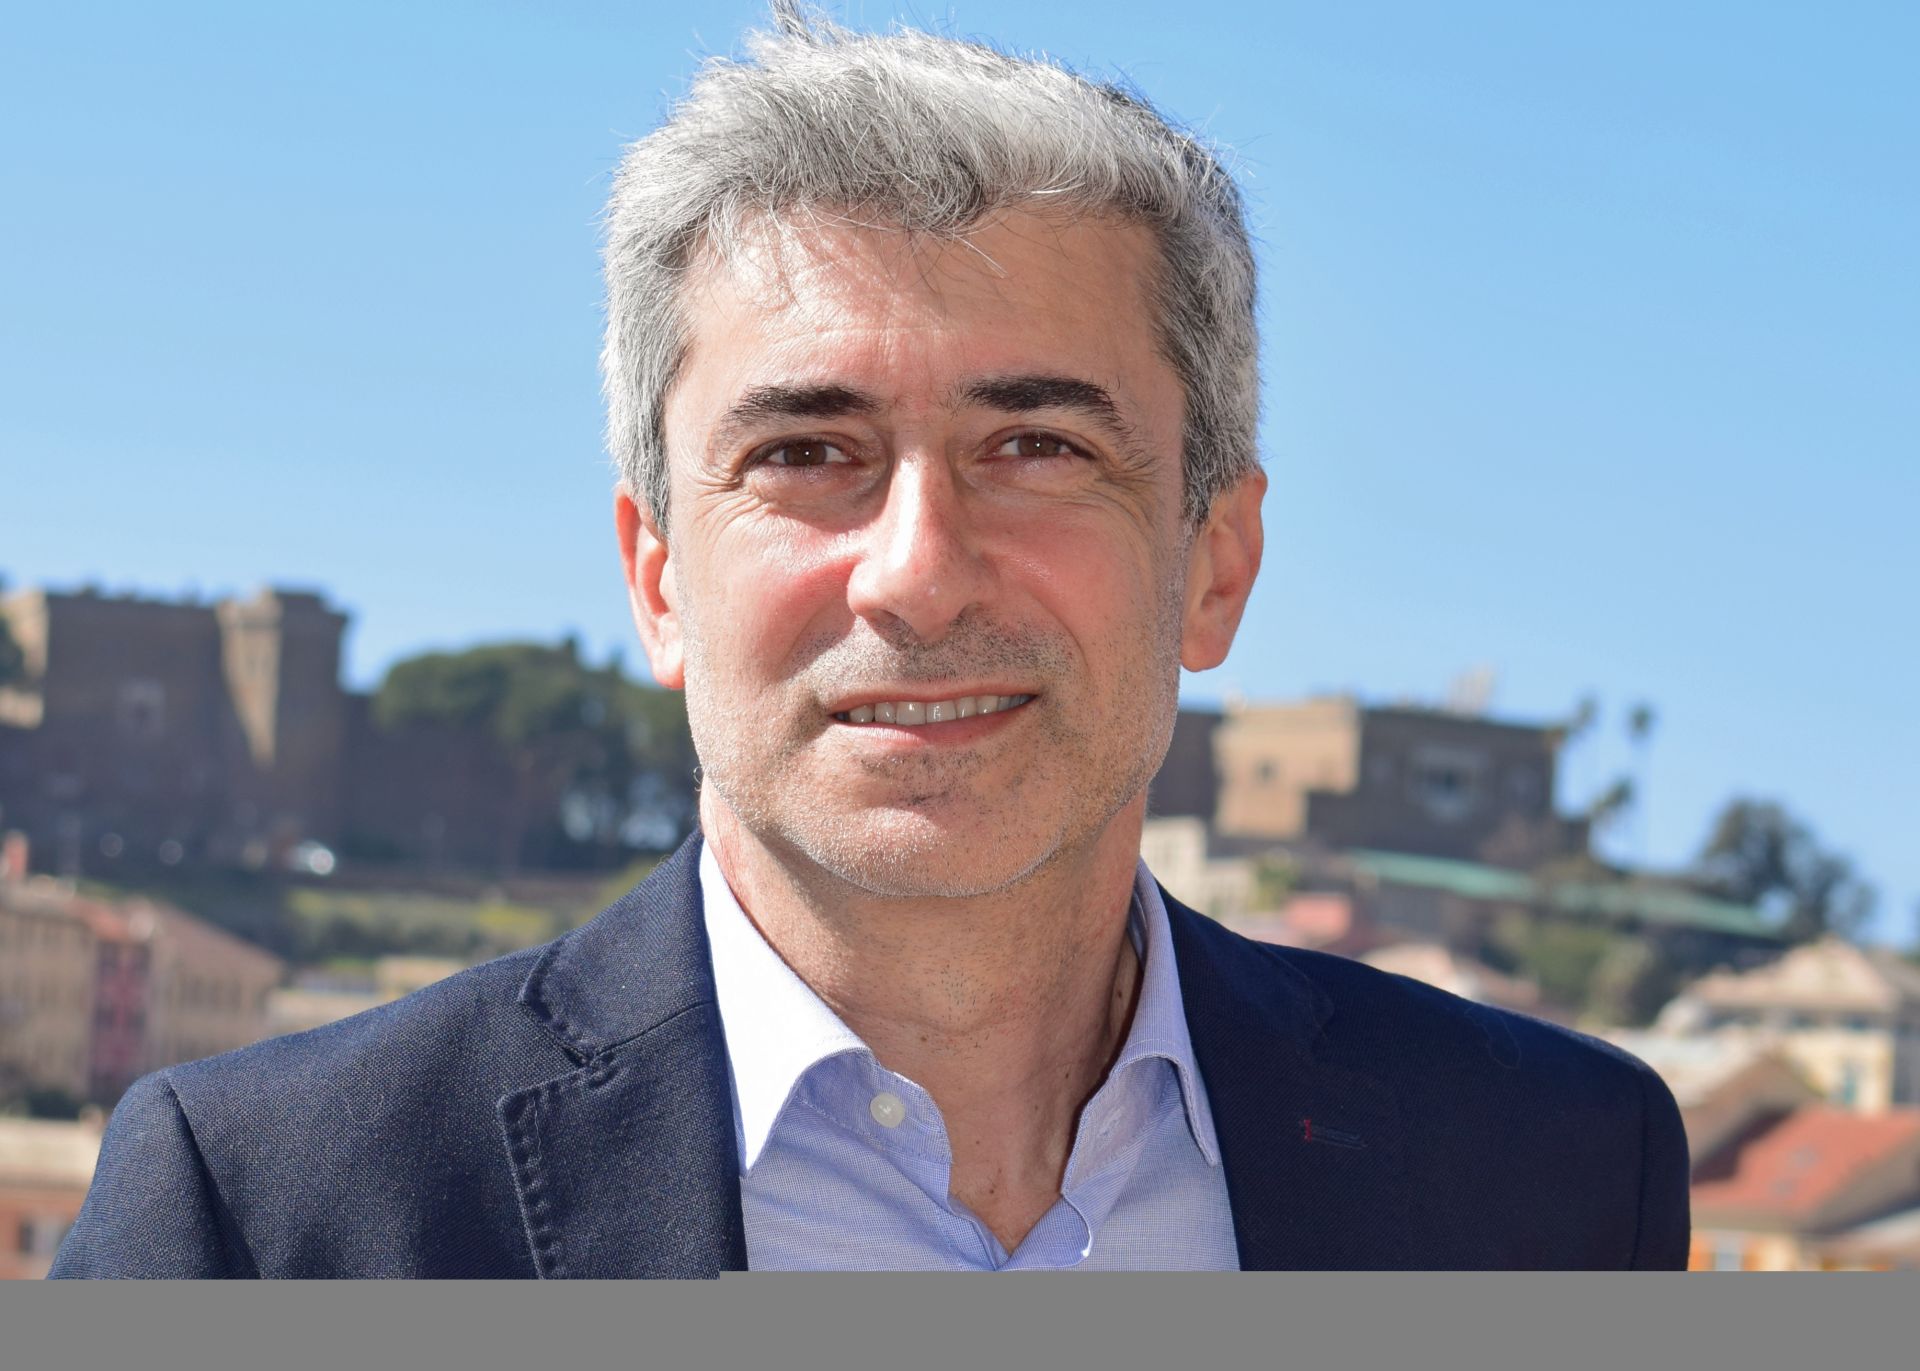 Elezioni Sestri Levante, in campo Francesco Solinas: "Il nostro 'partito' è la città, niente ideologie"